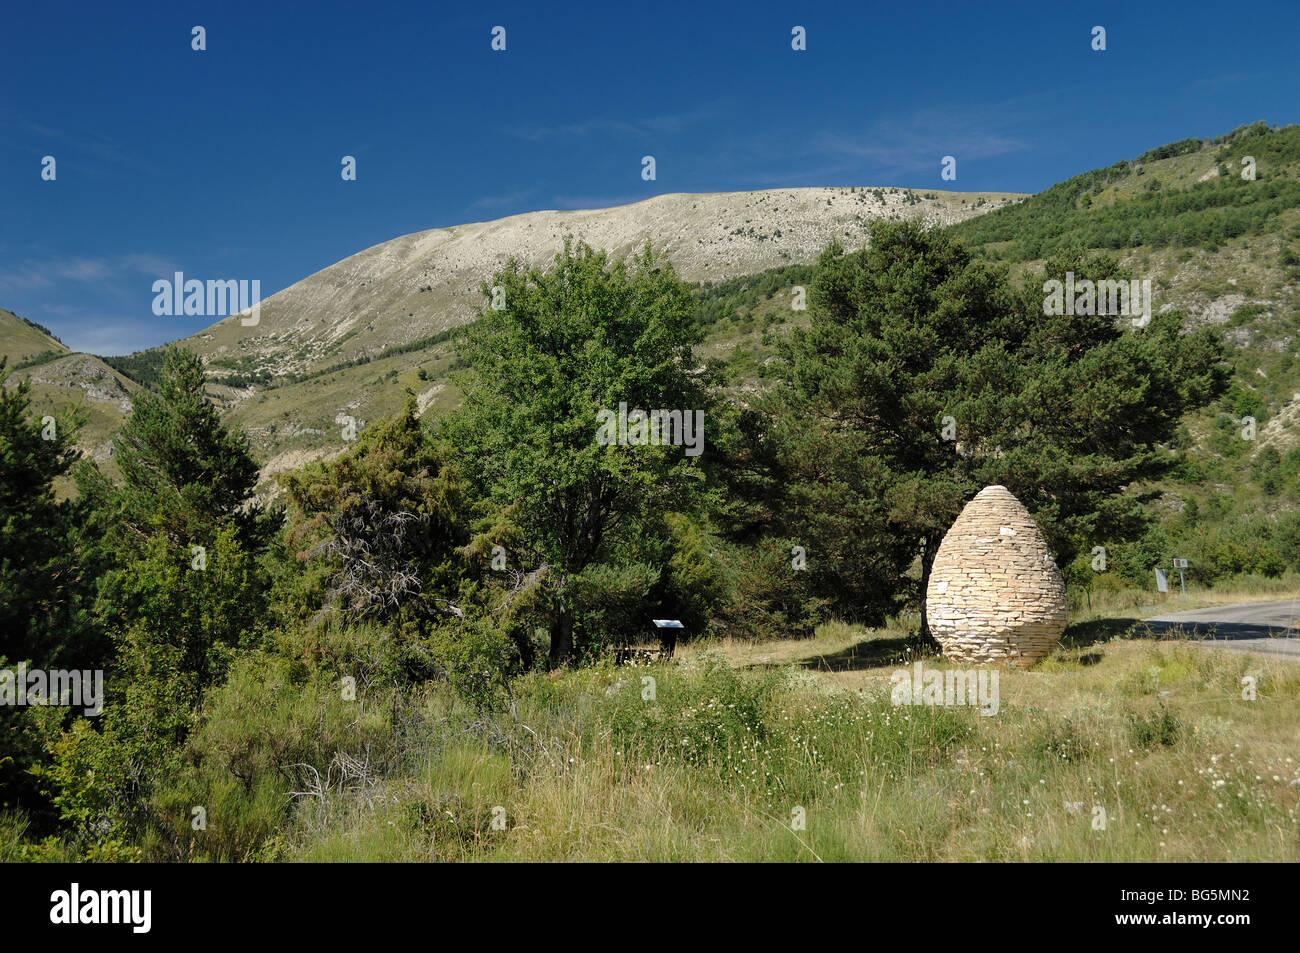 Andy Goldsworthy Landart ou Sculpture en cône de pierre sèche, Clumanc, Vallée de l'Asse, Alpes-de-haute-Provence, France Banque D'Images